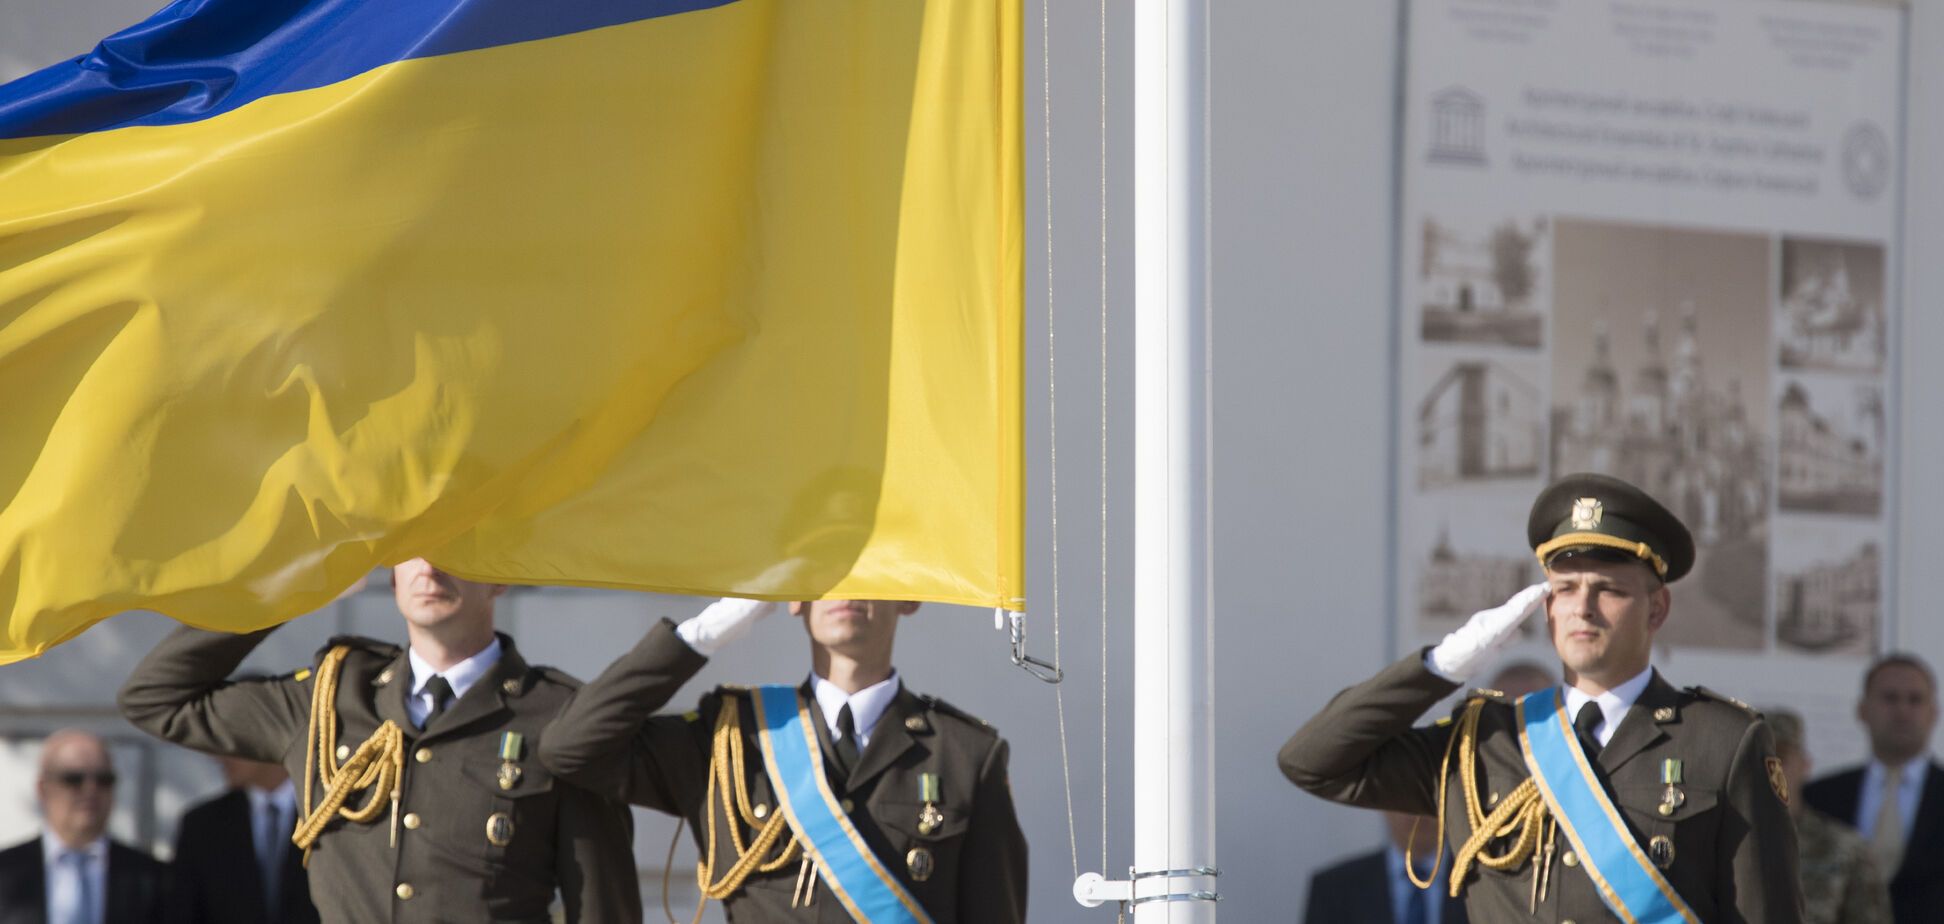 Собрались вместе: в сети показали уникальное фото с президентами Украины